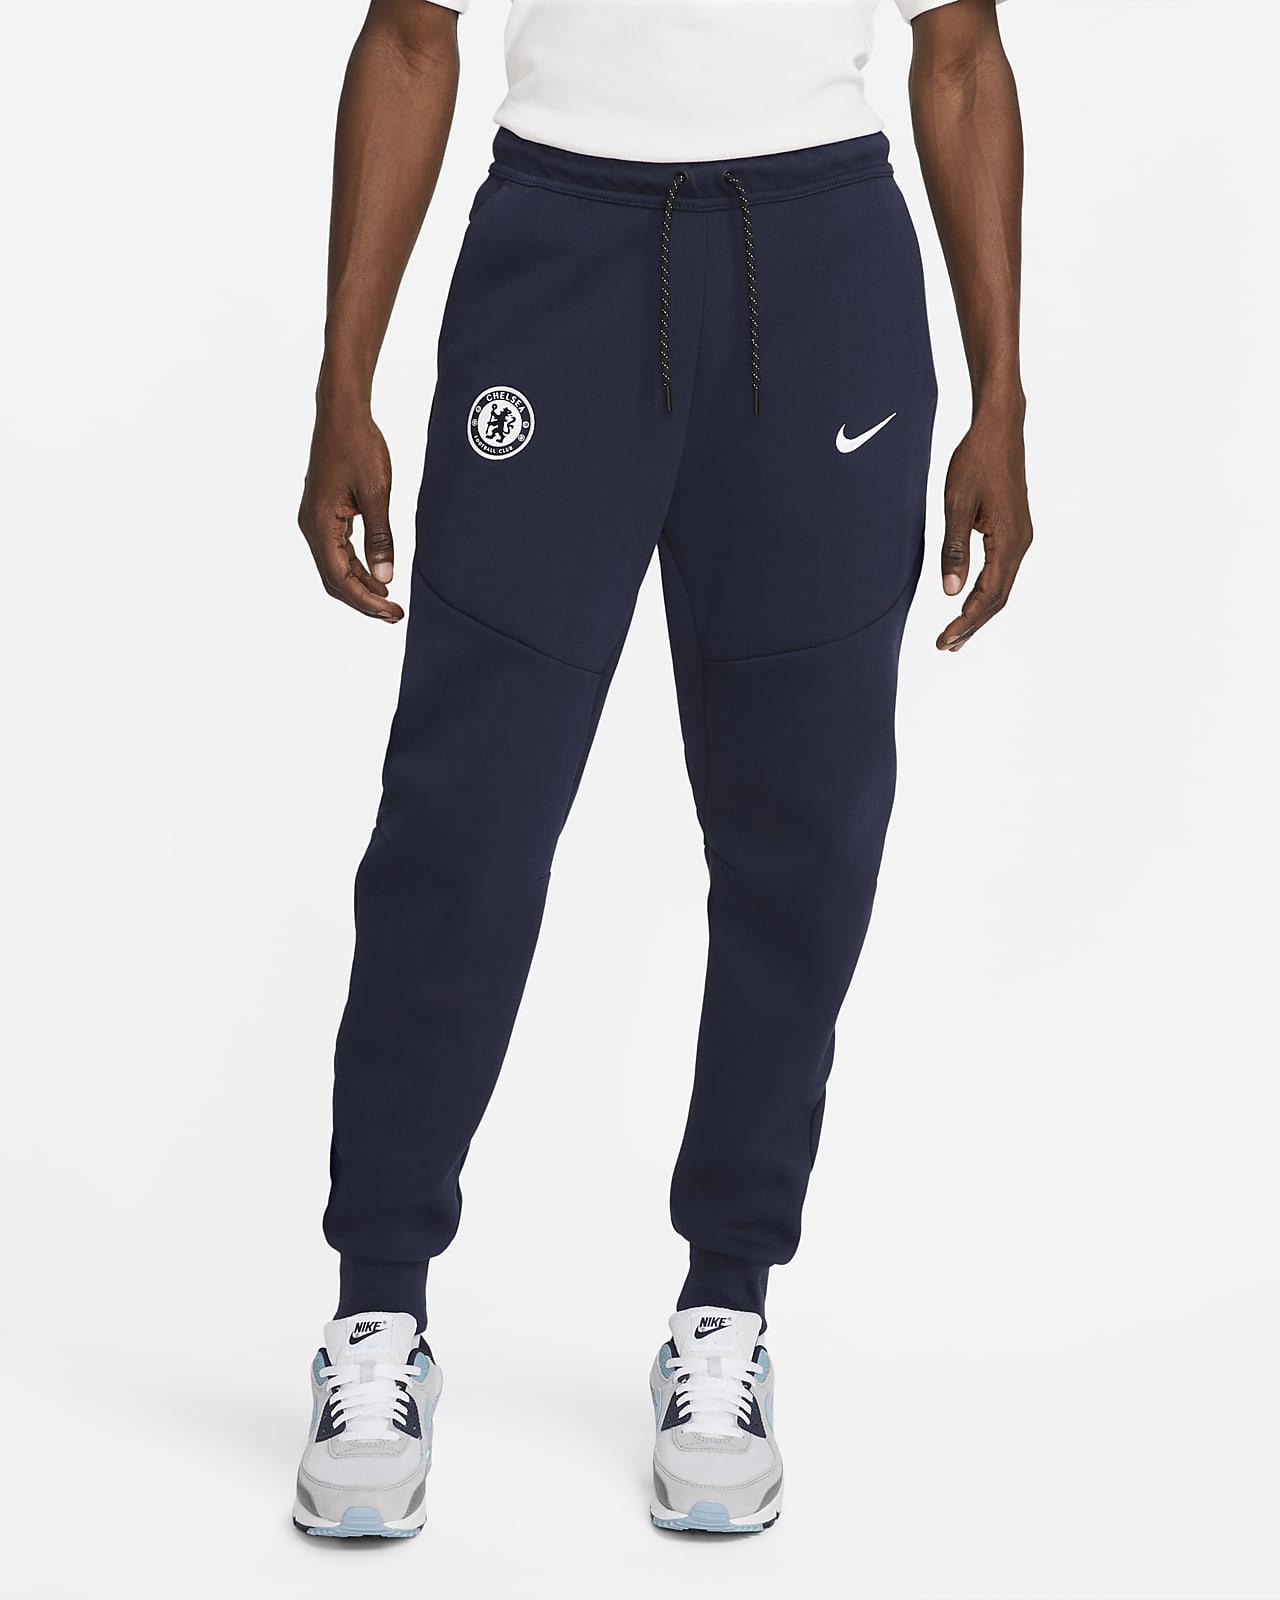 Chelsea F.C. Tech Fleece Men's Nike Joggers